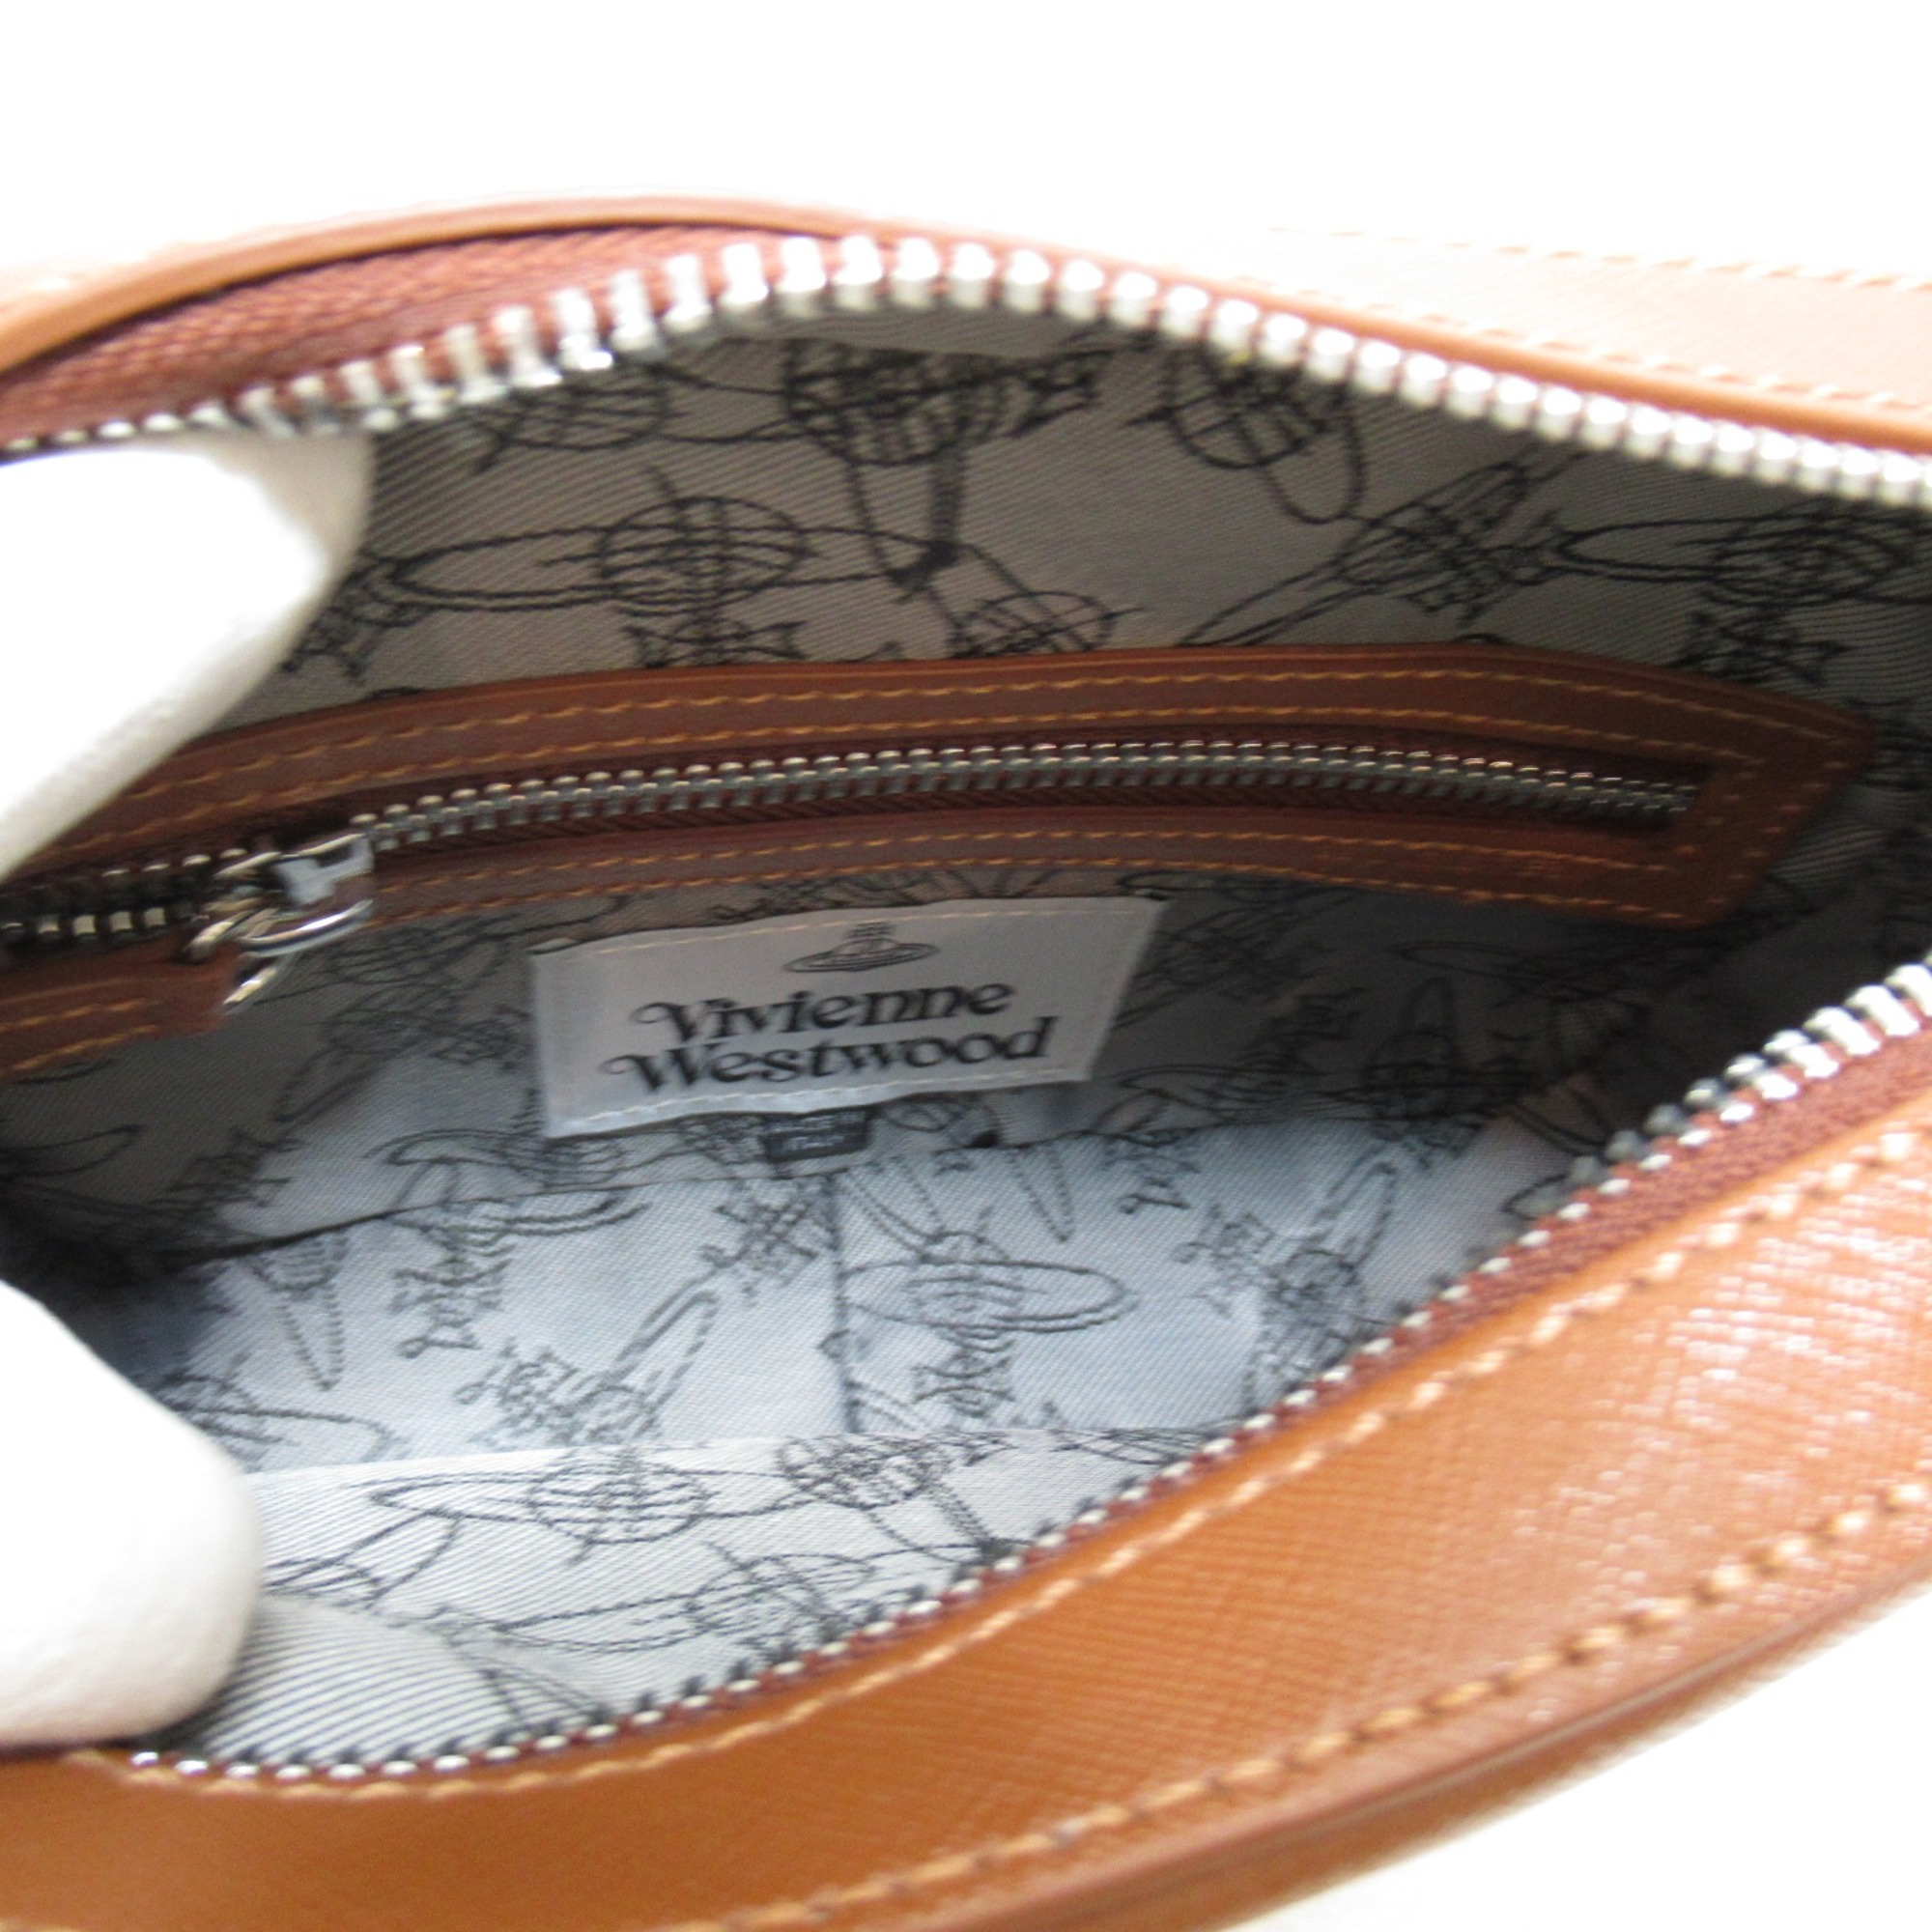 Vivienne Westwood Camera bag Shoulder Bag Brown leather 4303006441214D401